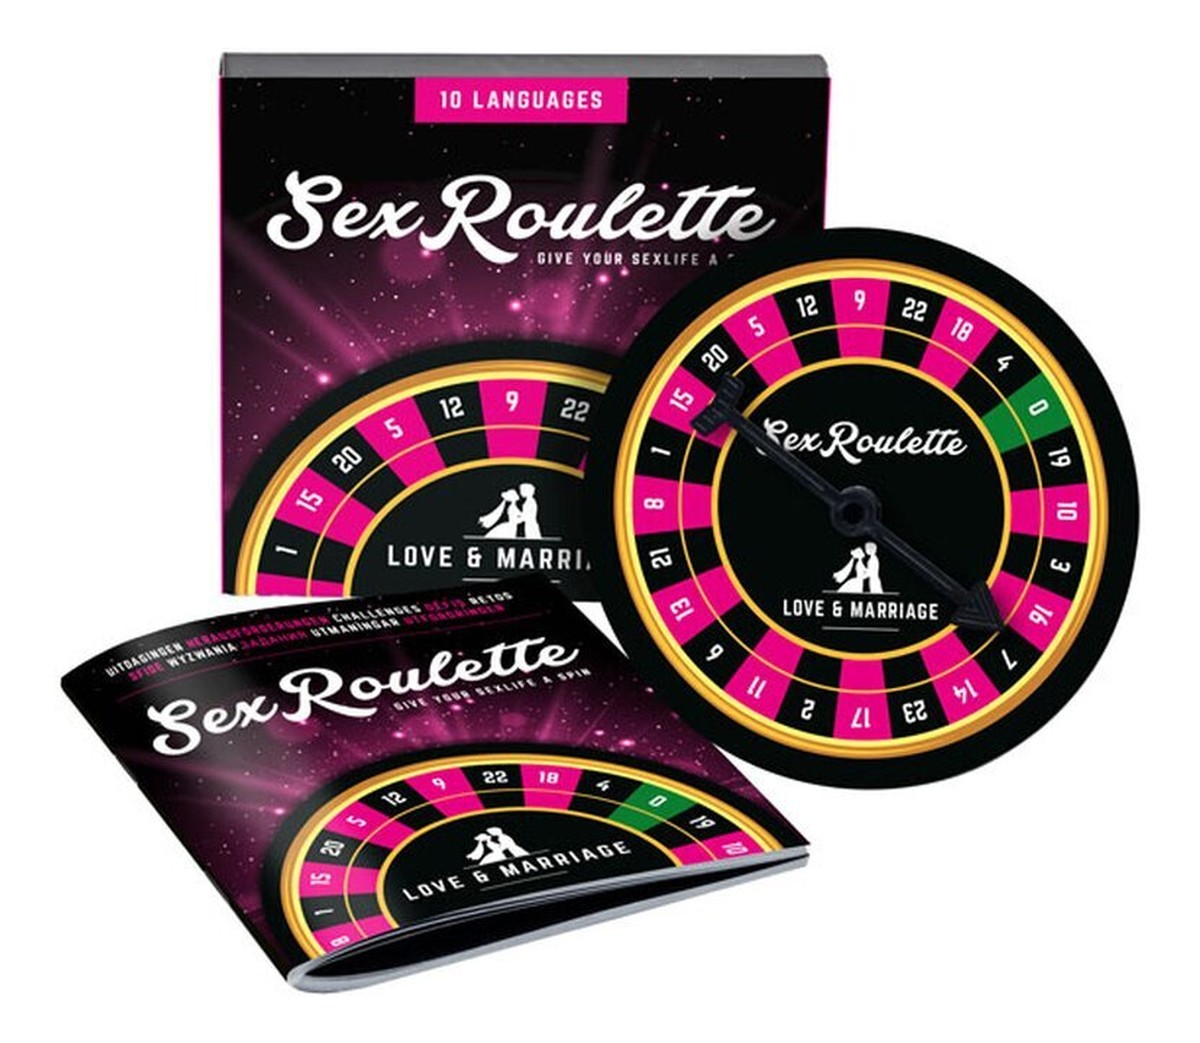 Sex roulette love & marriage wielojęzyczna gra erotyczna